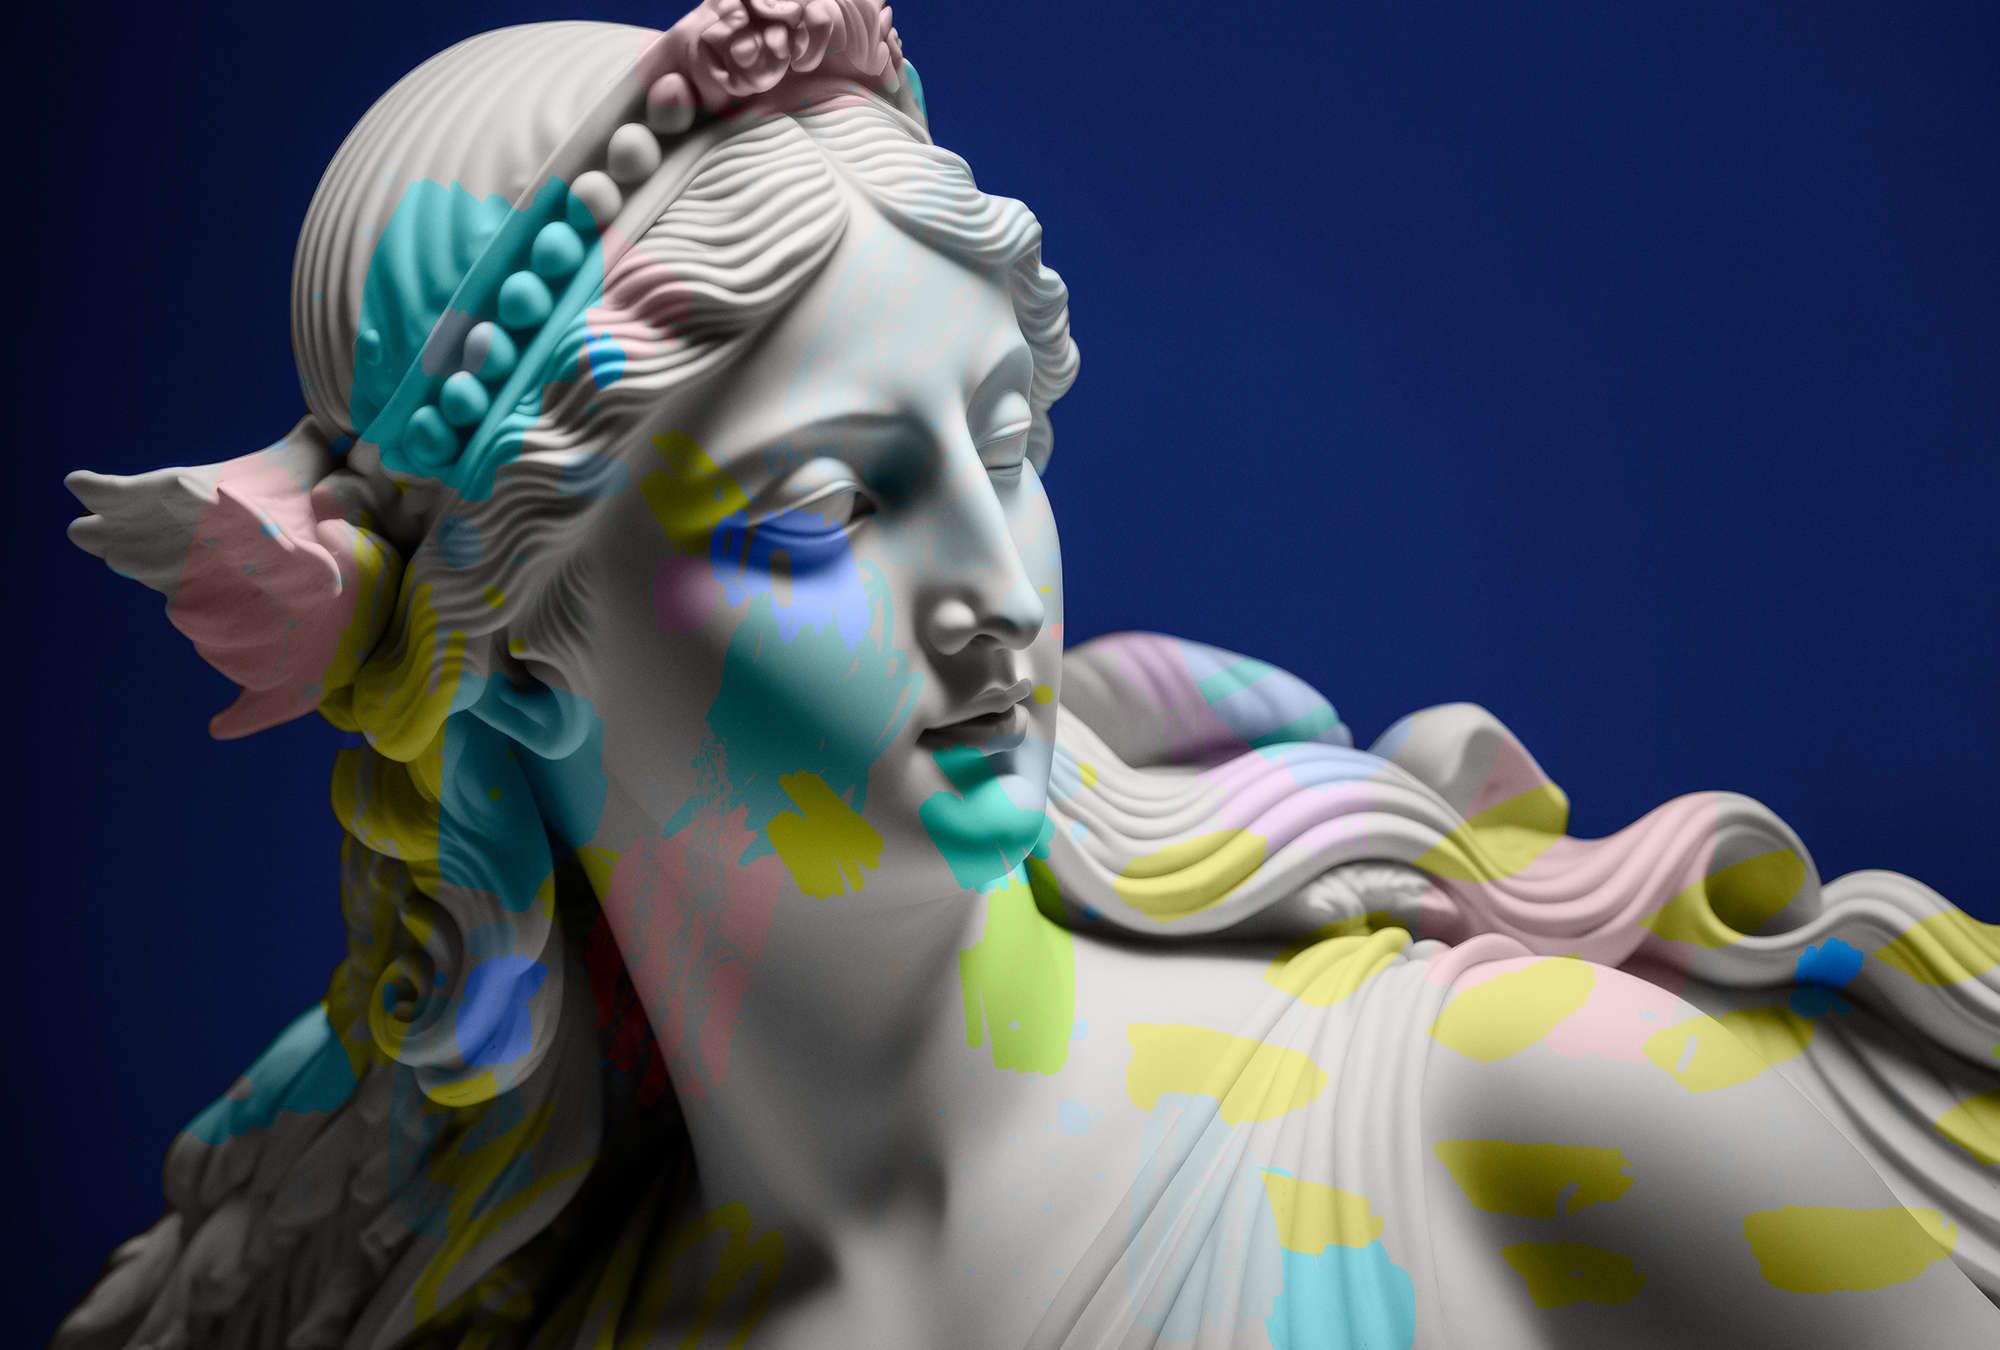             Digital behang »anthea« - vrouwelijk beeld met kleurrijke accenten - Gladde, licht parelmoerglanzende vliesstof
        